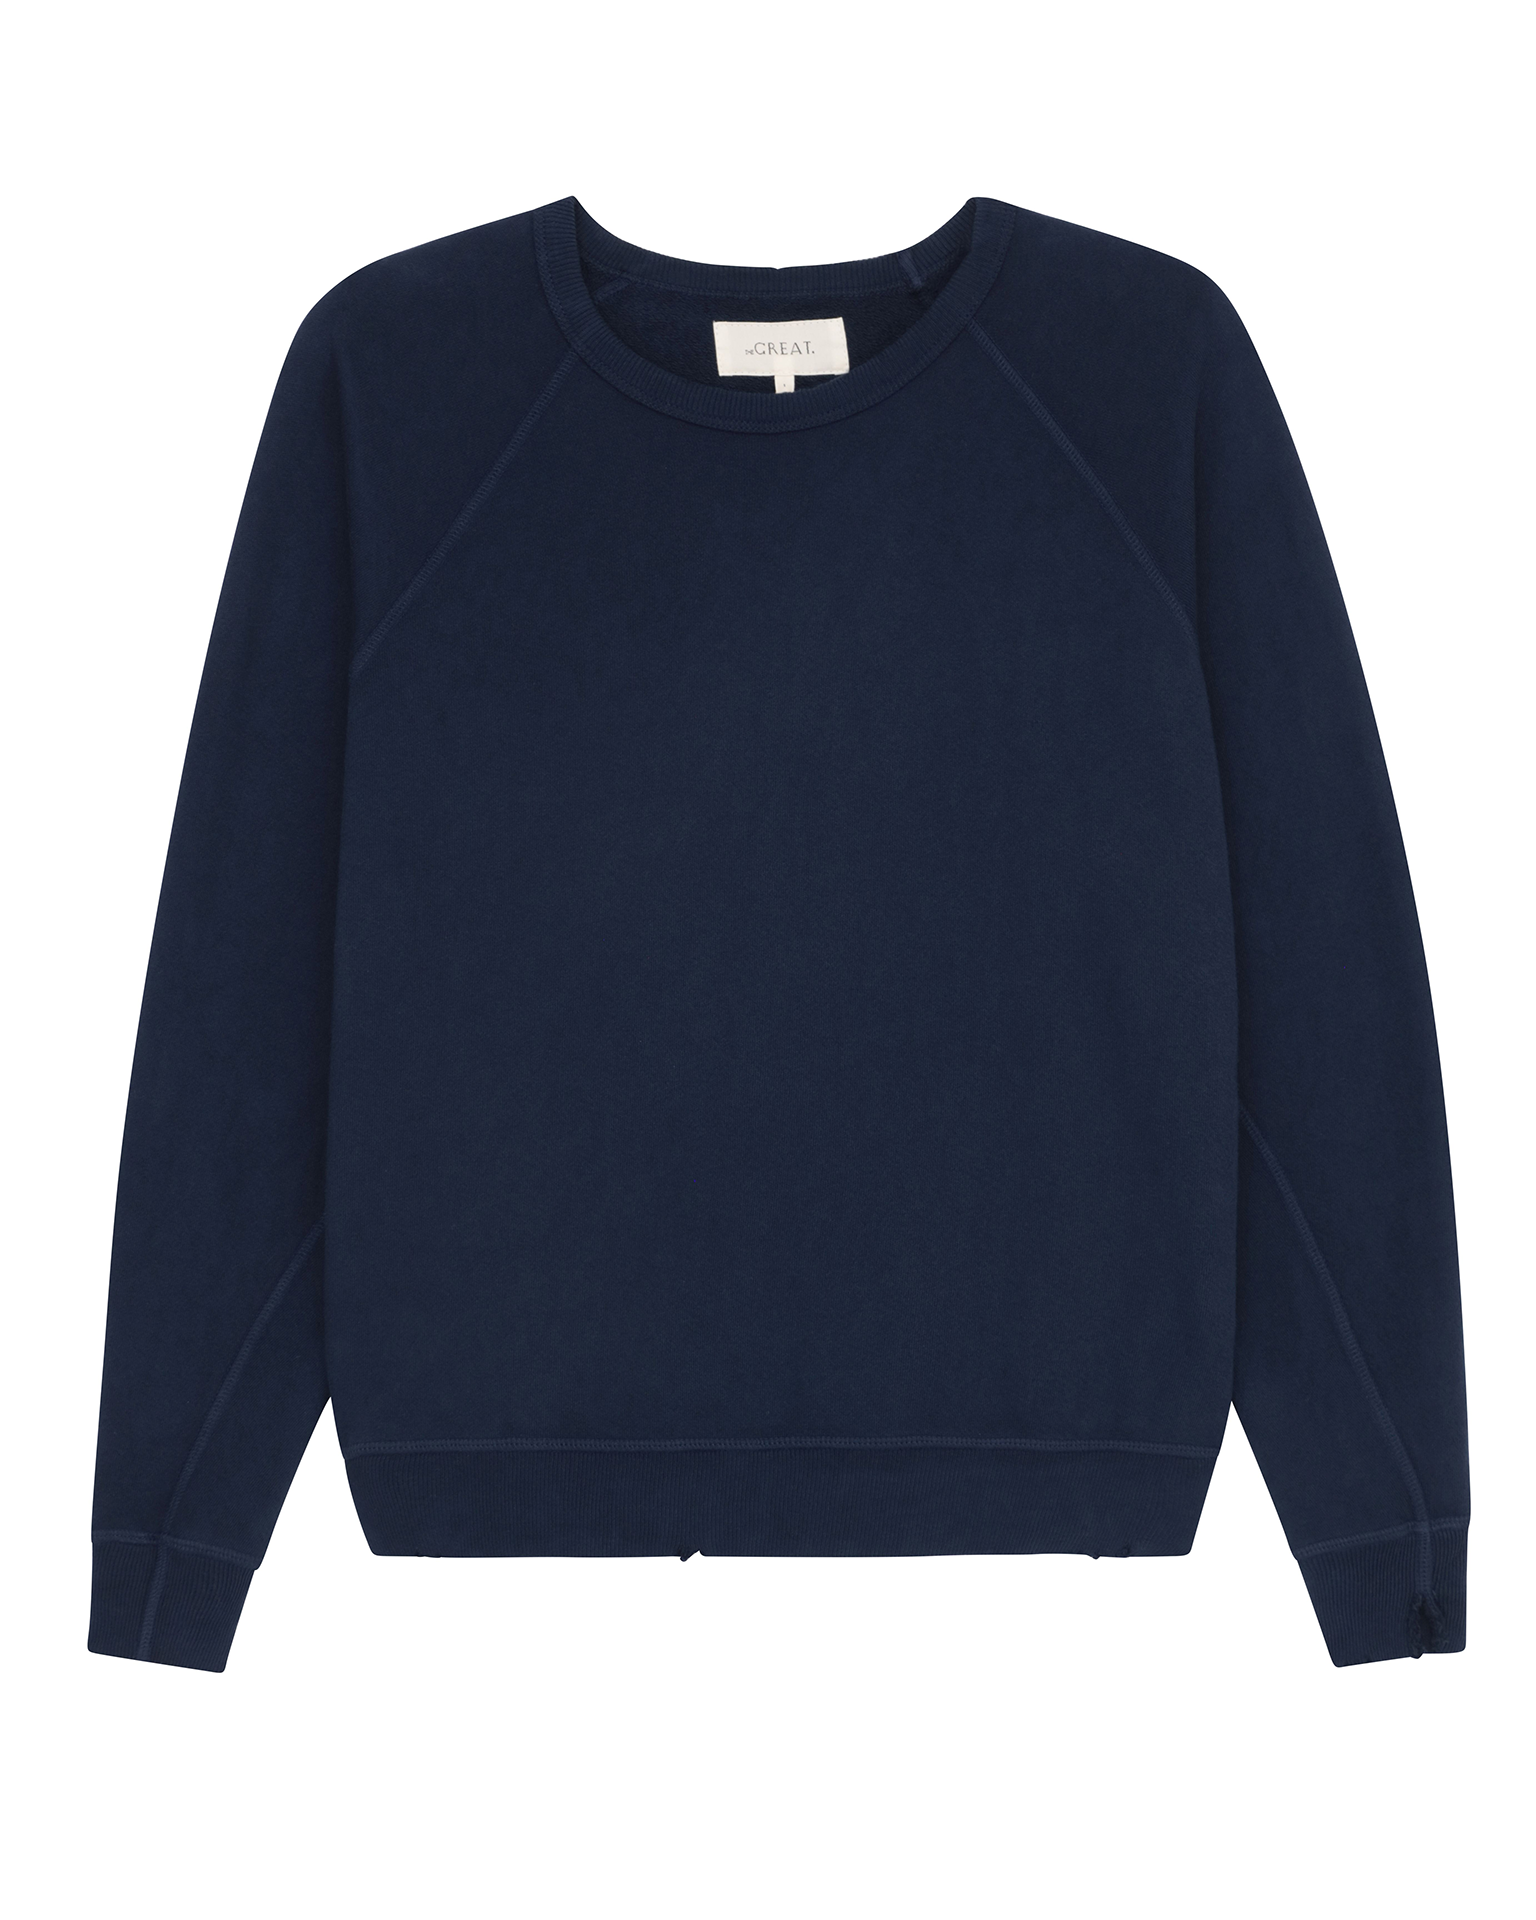 Plain Pullover Crew Neck Sweatshirt (Vintage Heather Blue) - B-WEAR